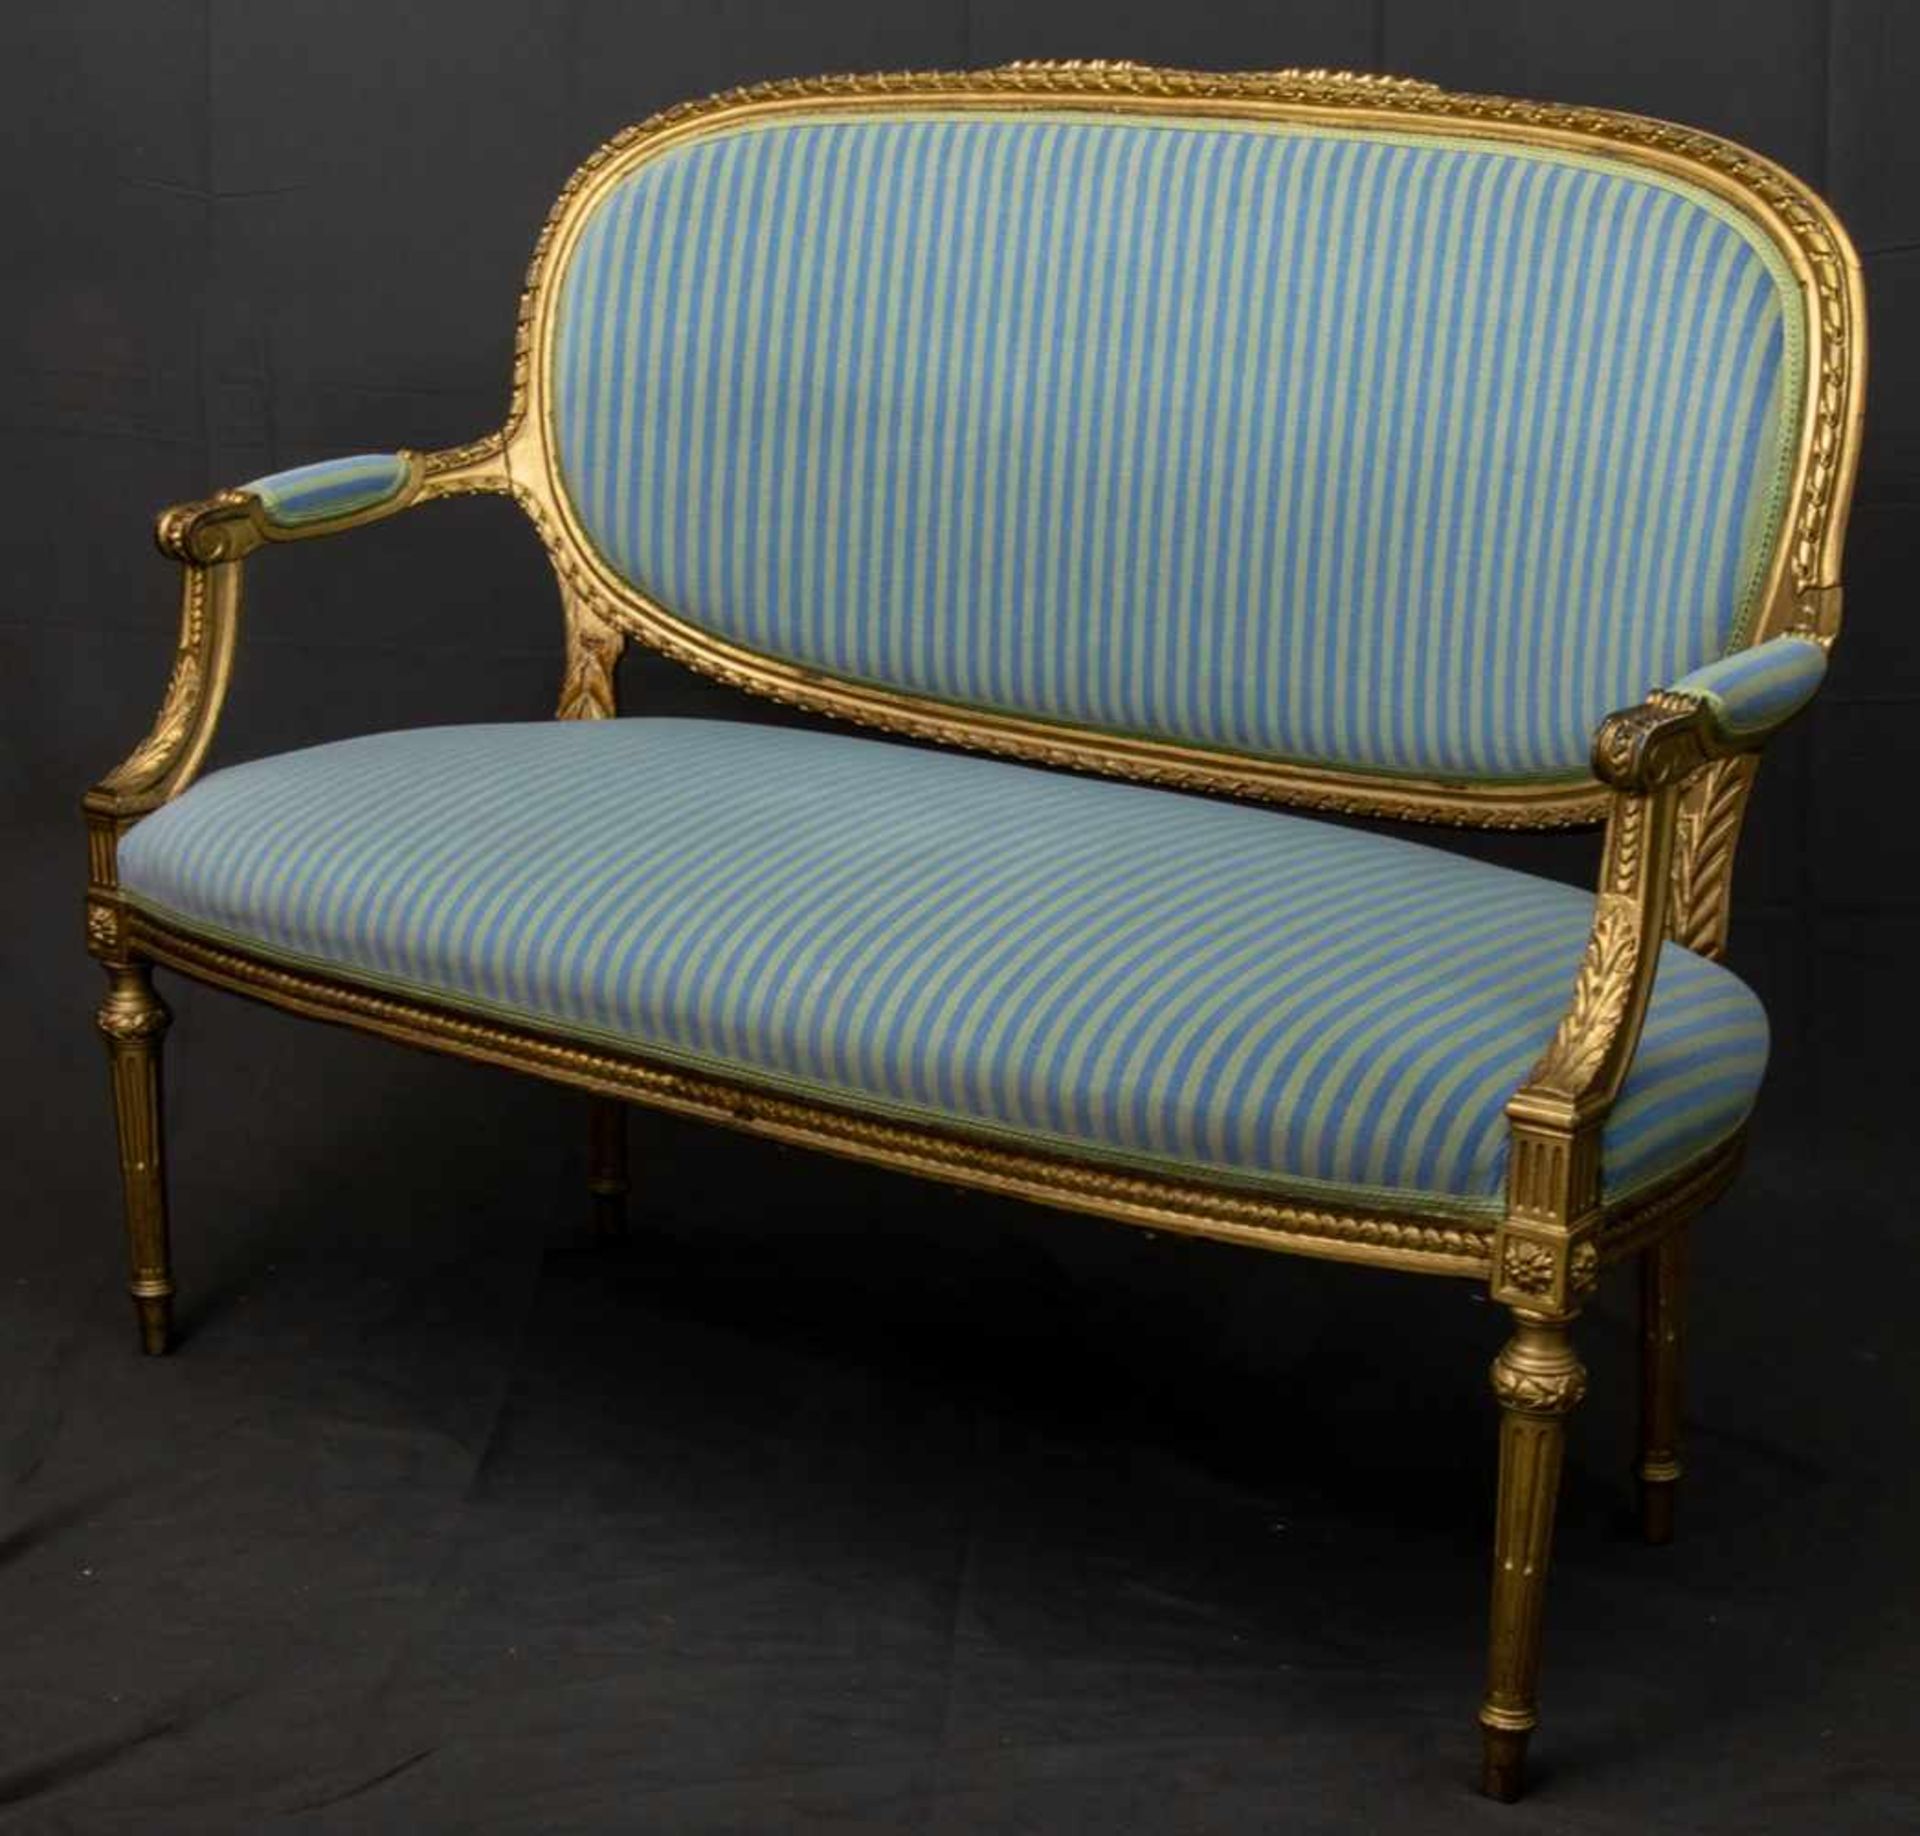 Zweisitzige Polsterbank/Sofa im Louis XVI-Stil, 19./20. Jhd., ältere Restauration, Lehnenhöhe ca. 94 - Bild 3 aus 10